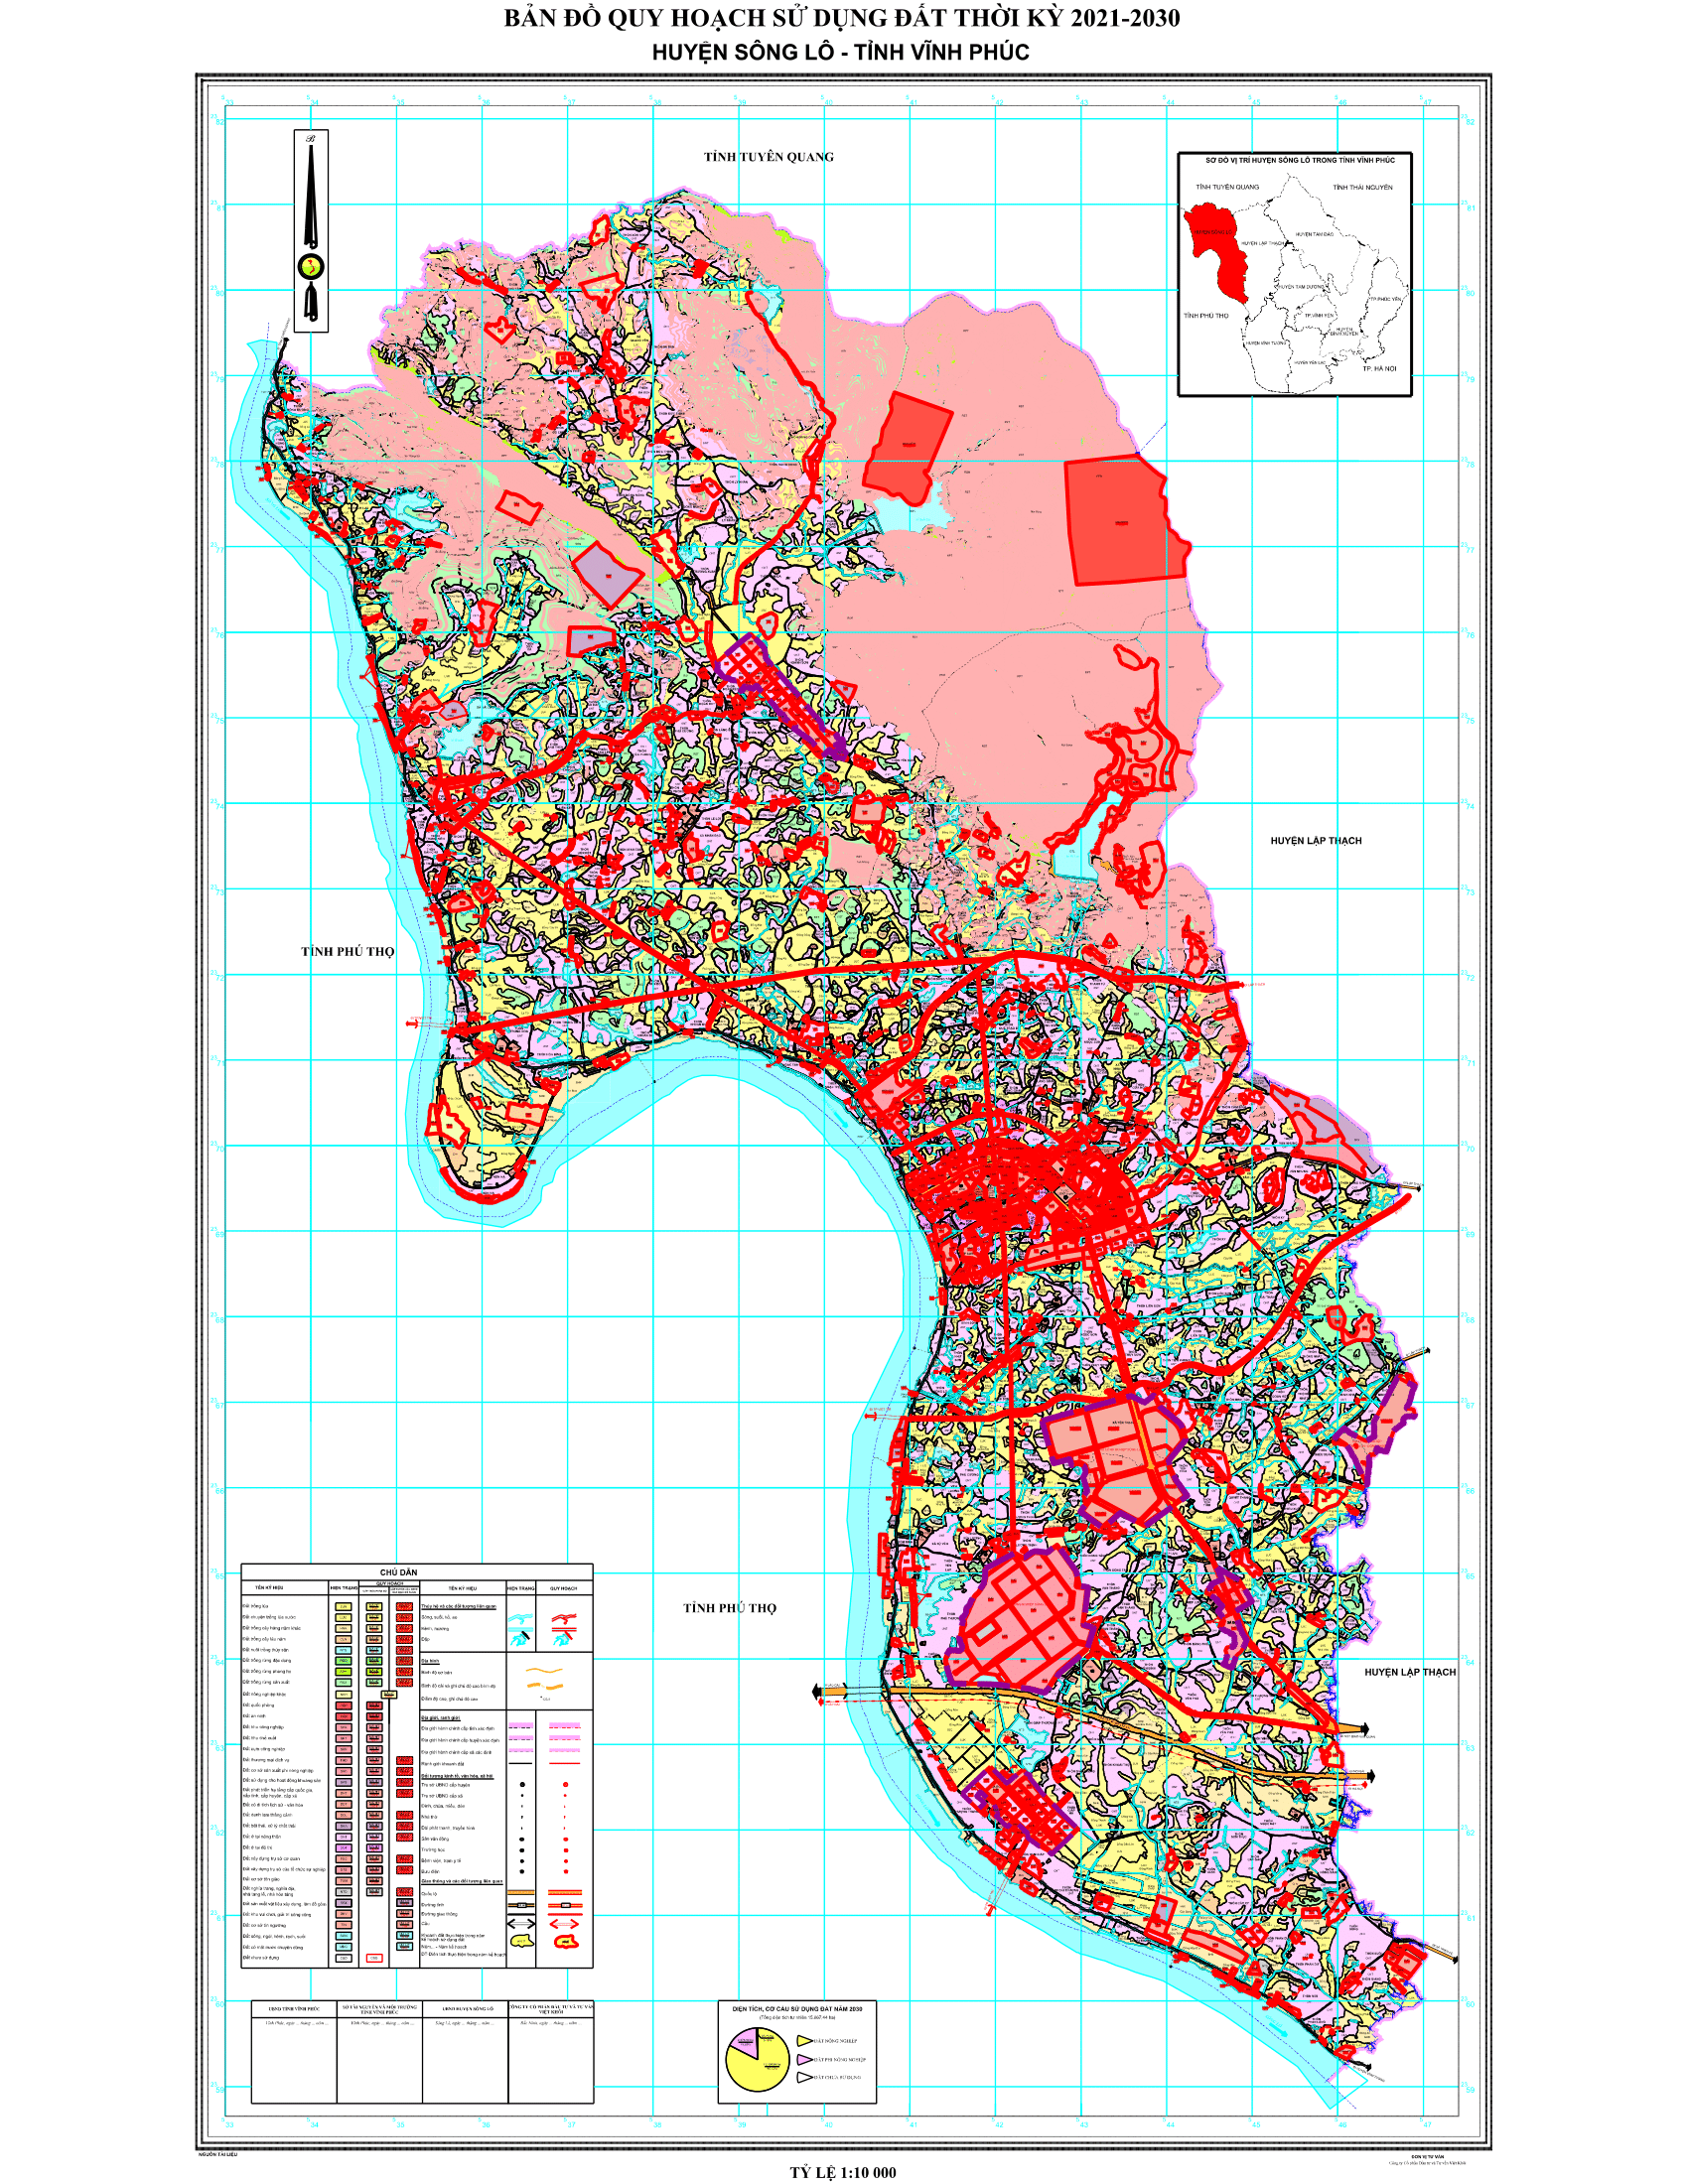 Bản đồ quy hoạch sử dụng đất huyện Sông Lô, Vĩnh Phúc